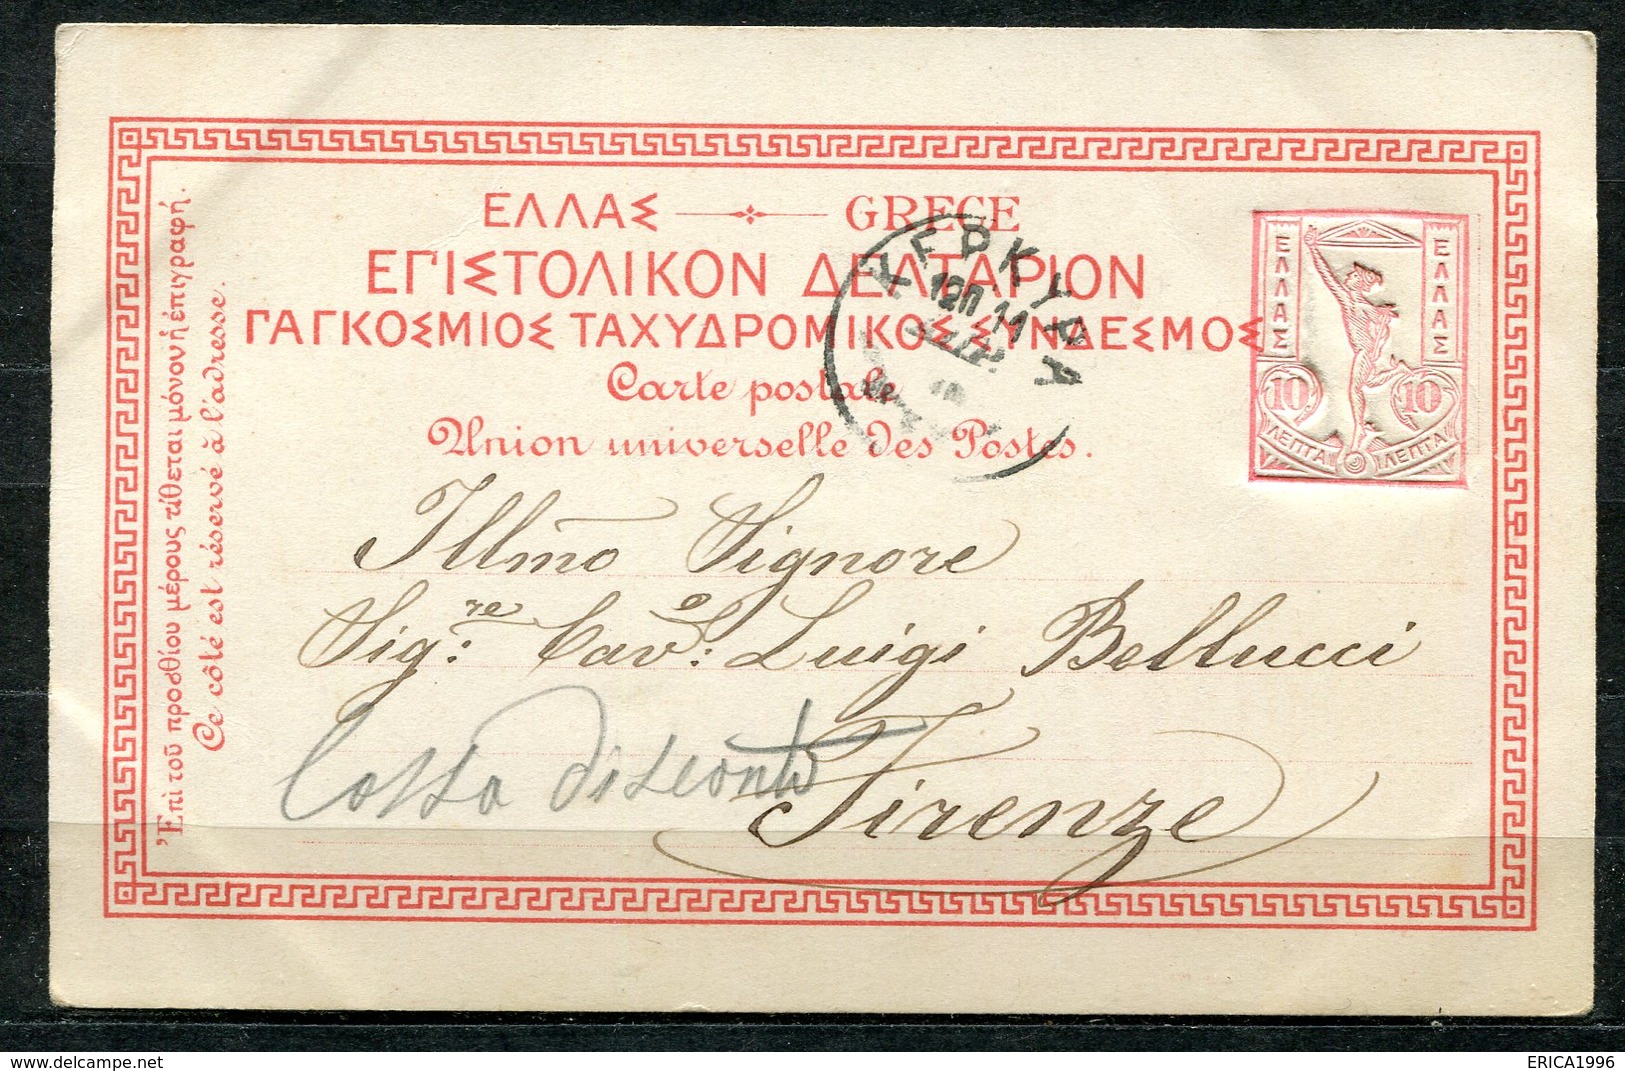 CARTOLINA CV2380 GRECIA GREECE Atene Athens, Gruss Aus Type, 1901, Viaggiata Per L'Italia, Formato Piccolo, Francobollo - Grecia